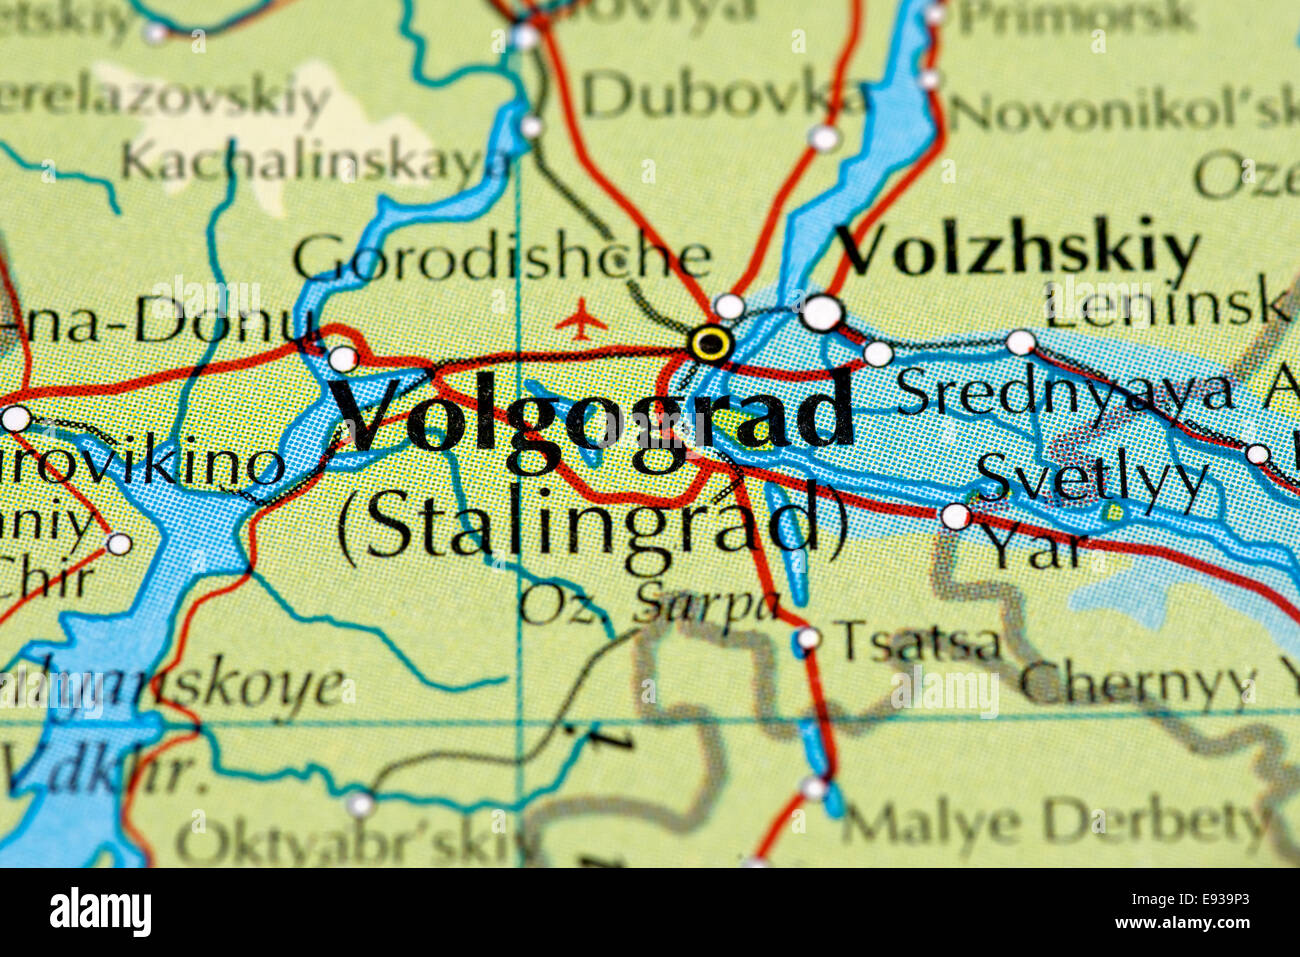 Map close up of Volgograd / Stalingrad, Russia Stock Photo: 74446907